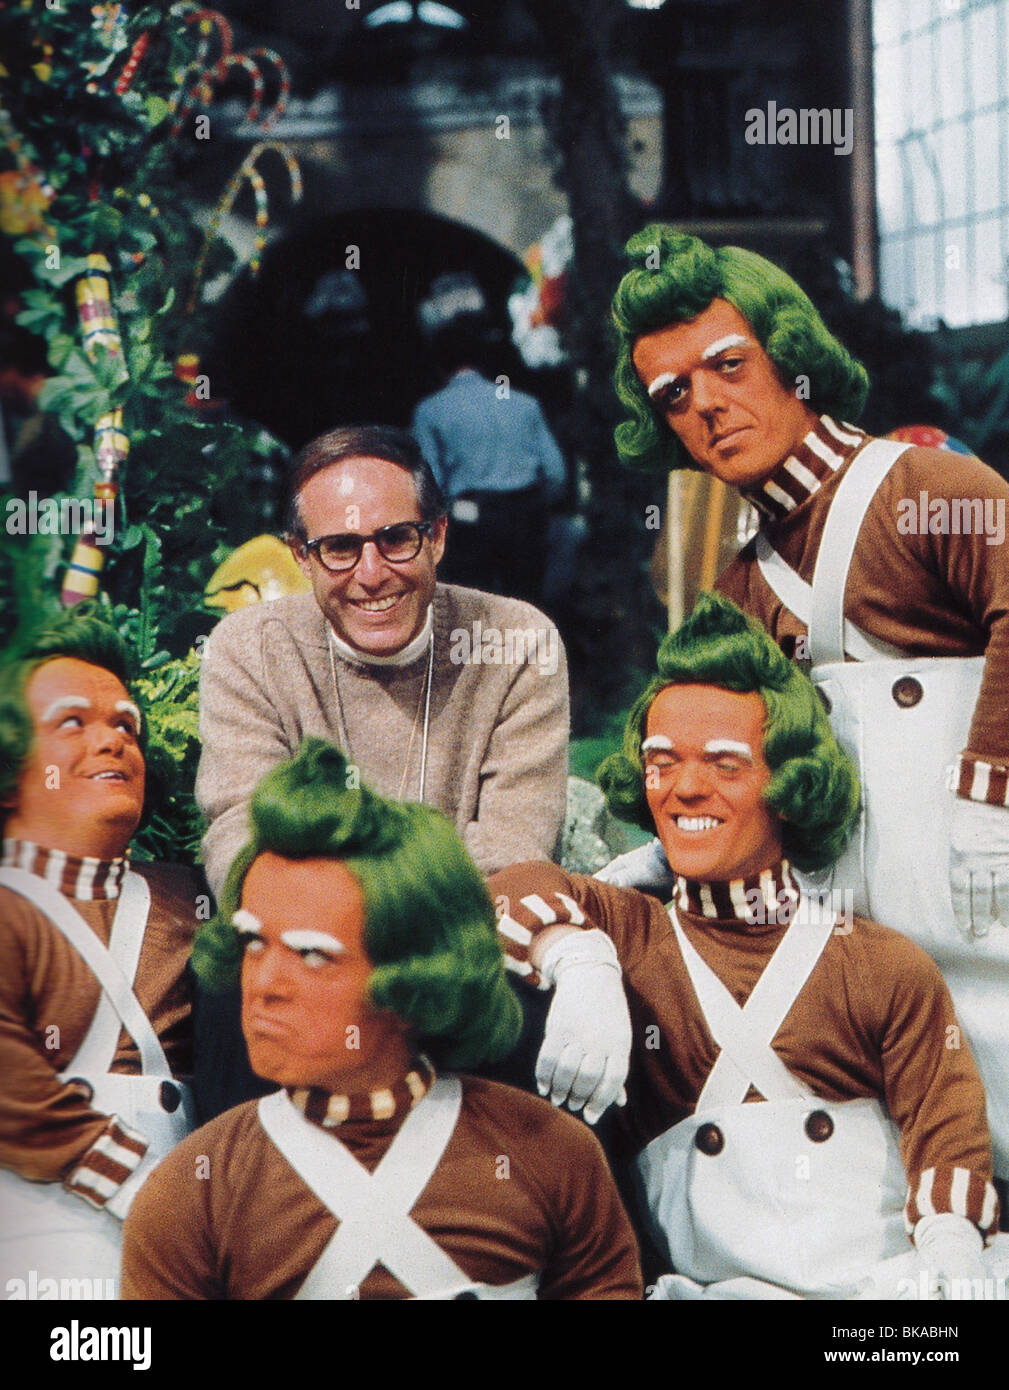 Willy Wonka et la Chocolaterie Année : 1971- USA Réalisation : Mel Stuart Mel Stuart Shooting photo Banque D'Images